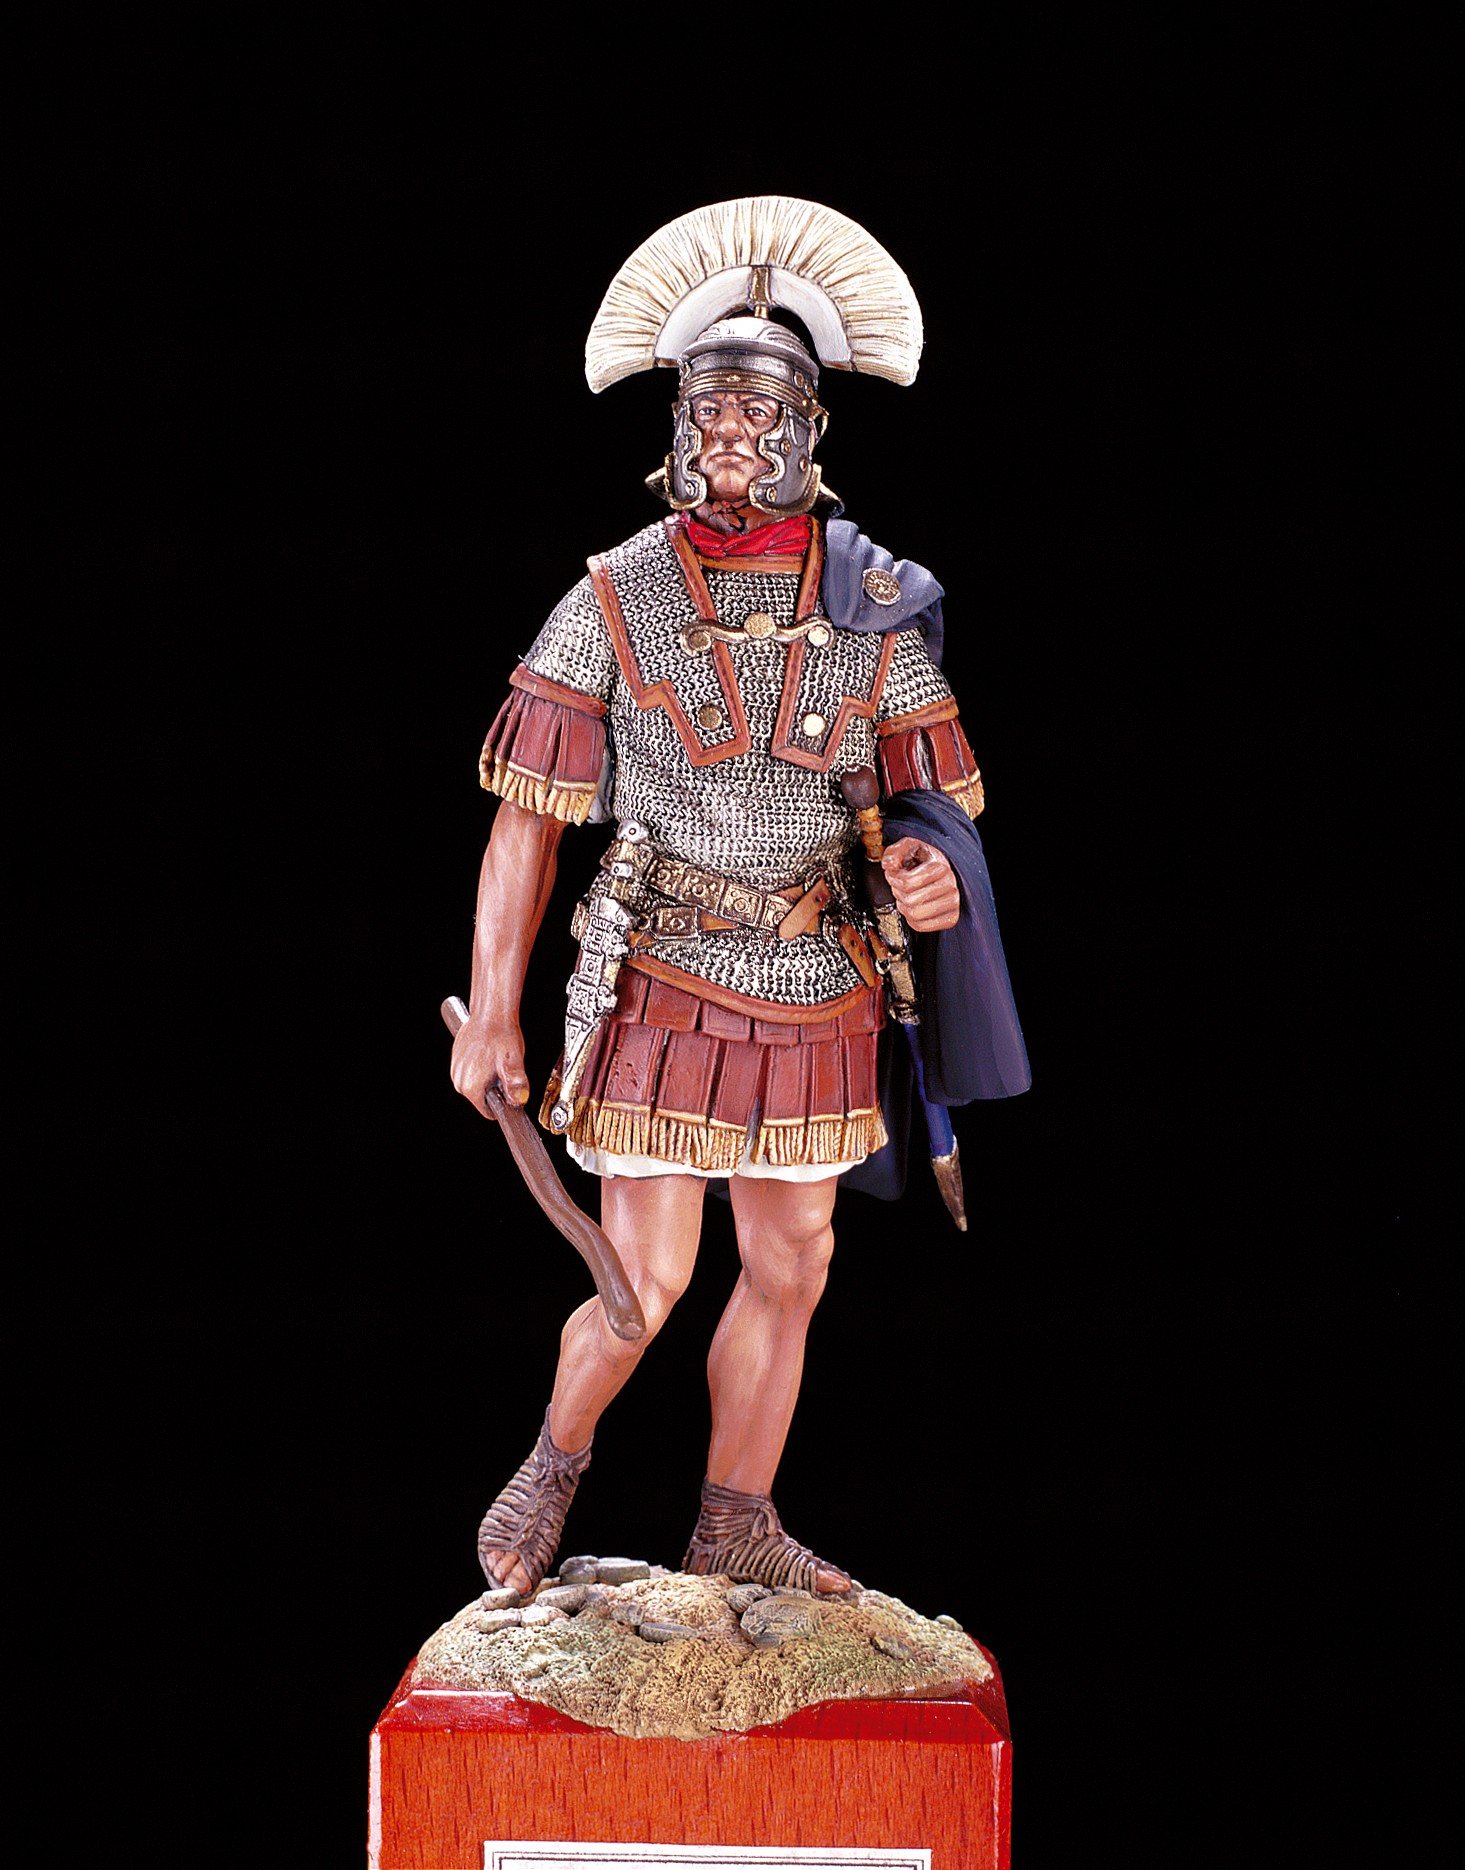 Roman Centurion Figurine - Imperial Rome, I Century A.D. (Amati)